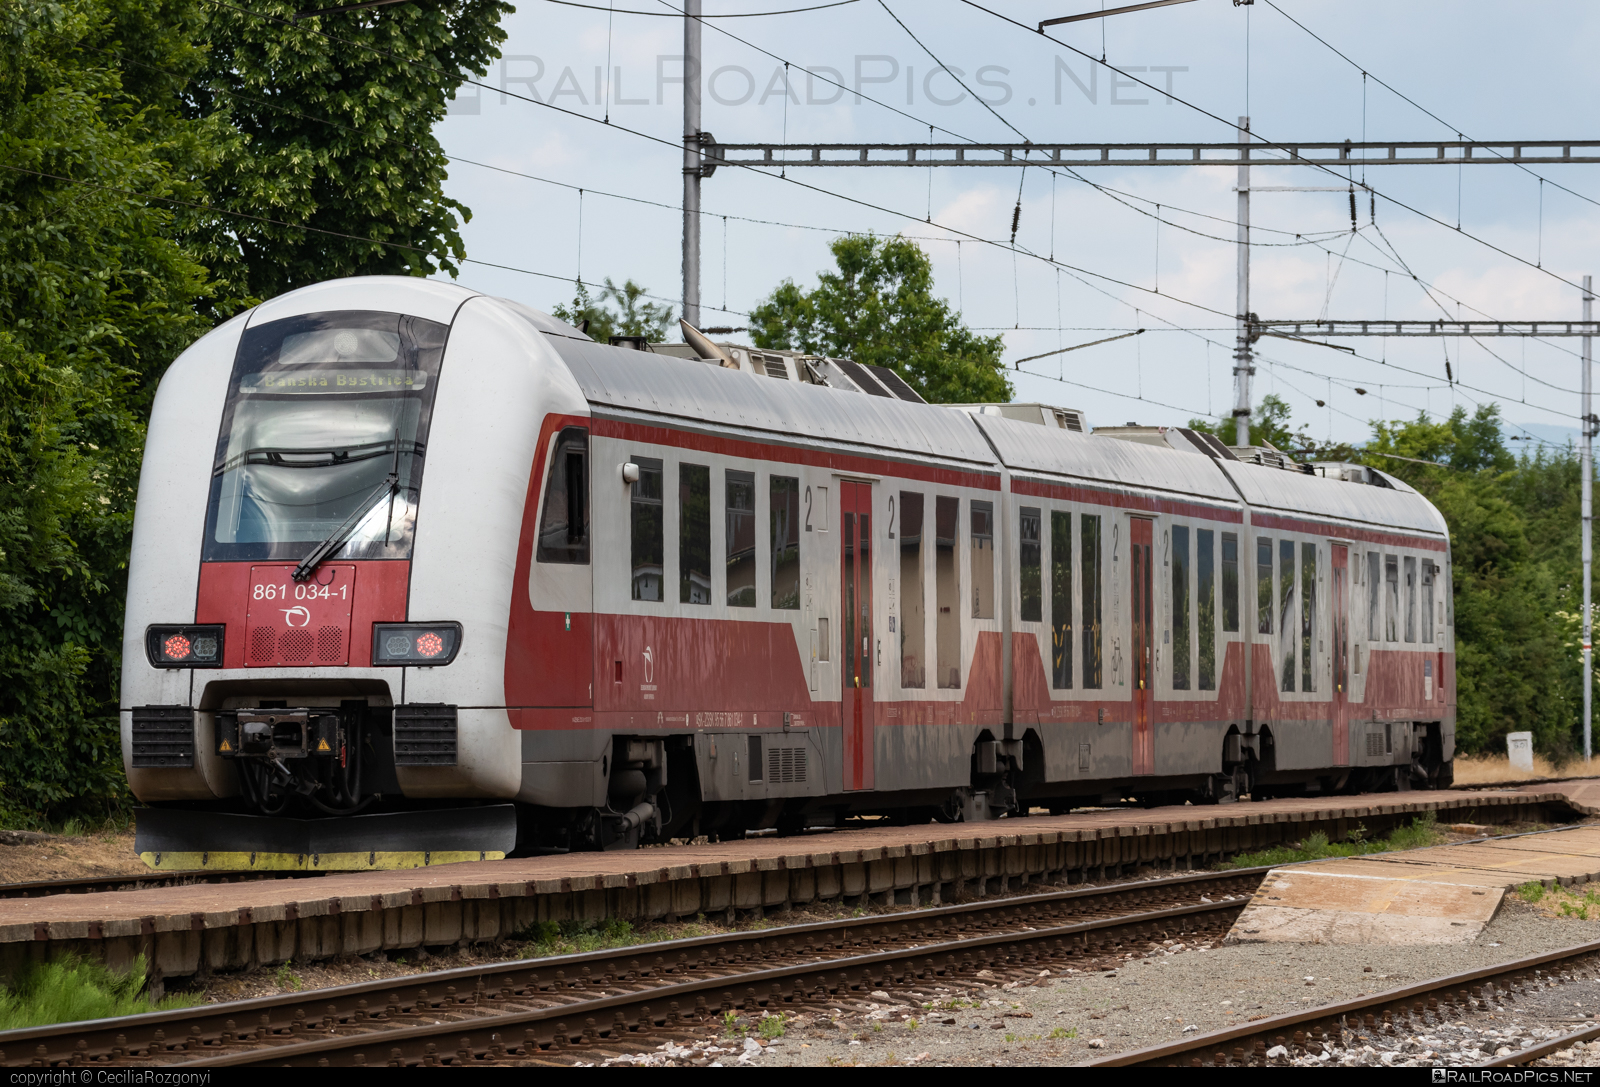 ŽOS Vrútky Class 861.0 - 861 034-1 operated by Železničná Spoločnost' Slovensko, a.s. #ZeleznicnaSpolocnostSlovensko #dunihlav #husenica #zosvrutky #zosvrutky861 #zosvrutky8610 #zssk #zssk861 #zssk8610